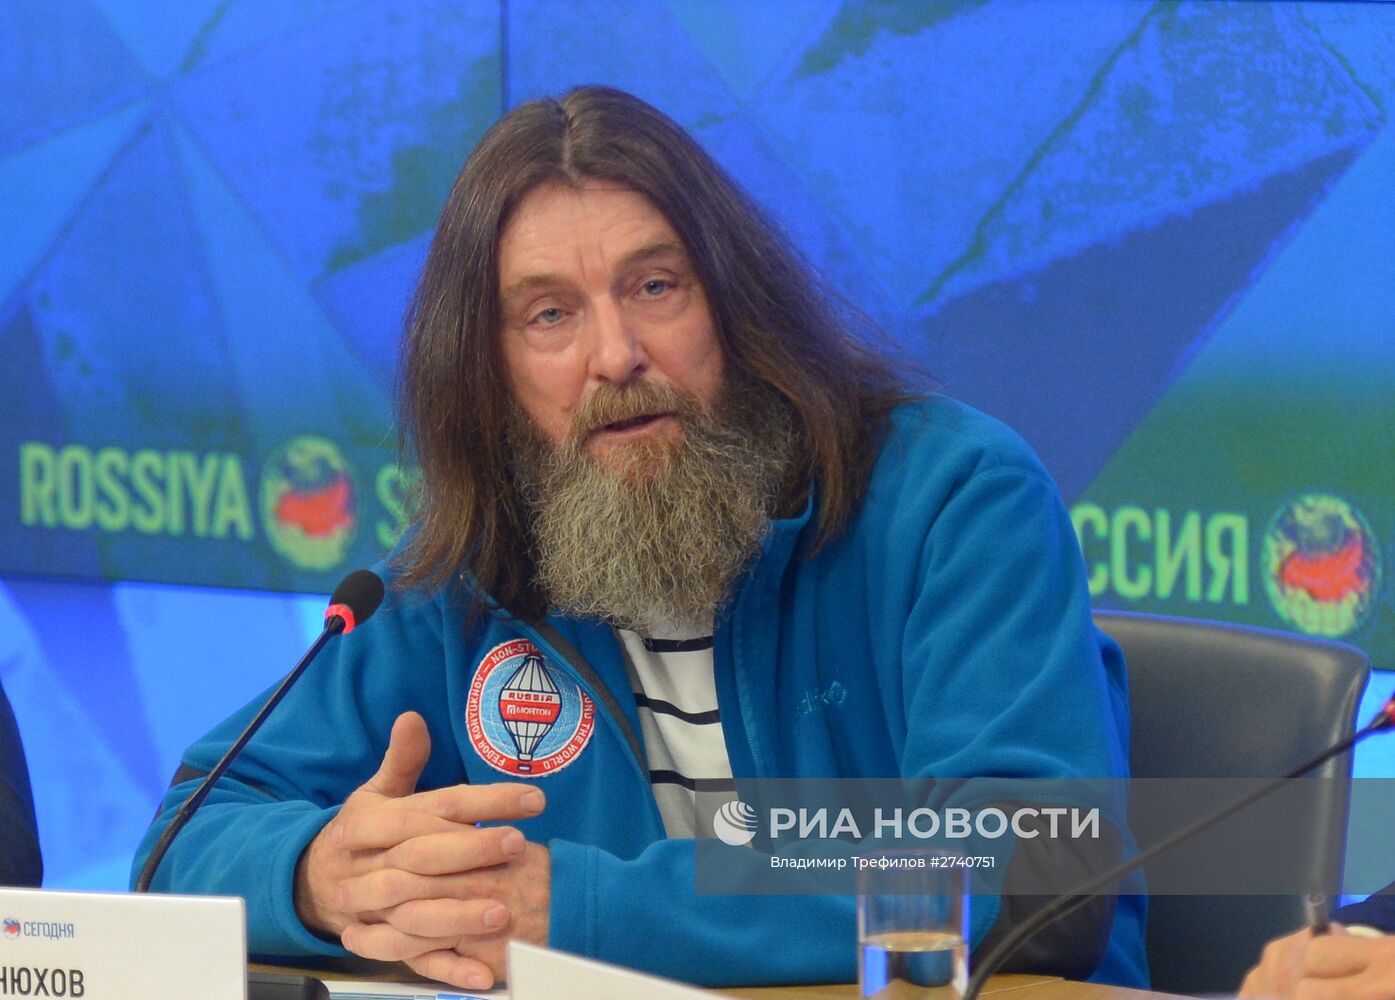 Пресс-конференция о кругосветном полете Федора Конюхова